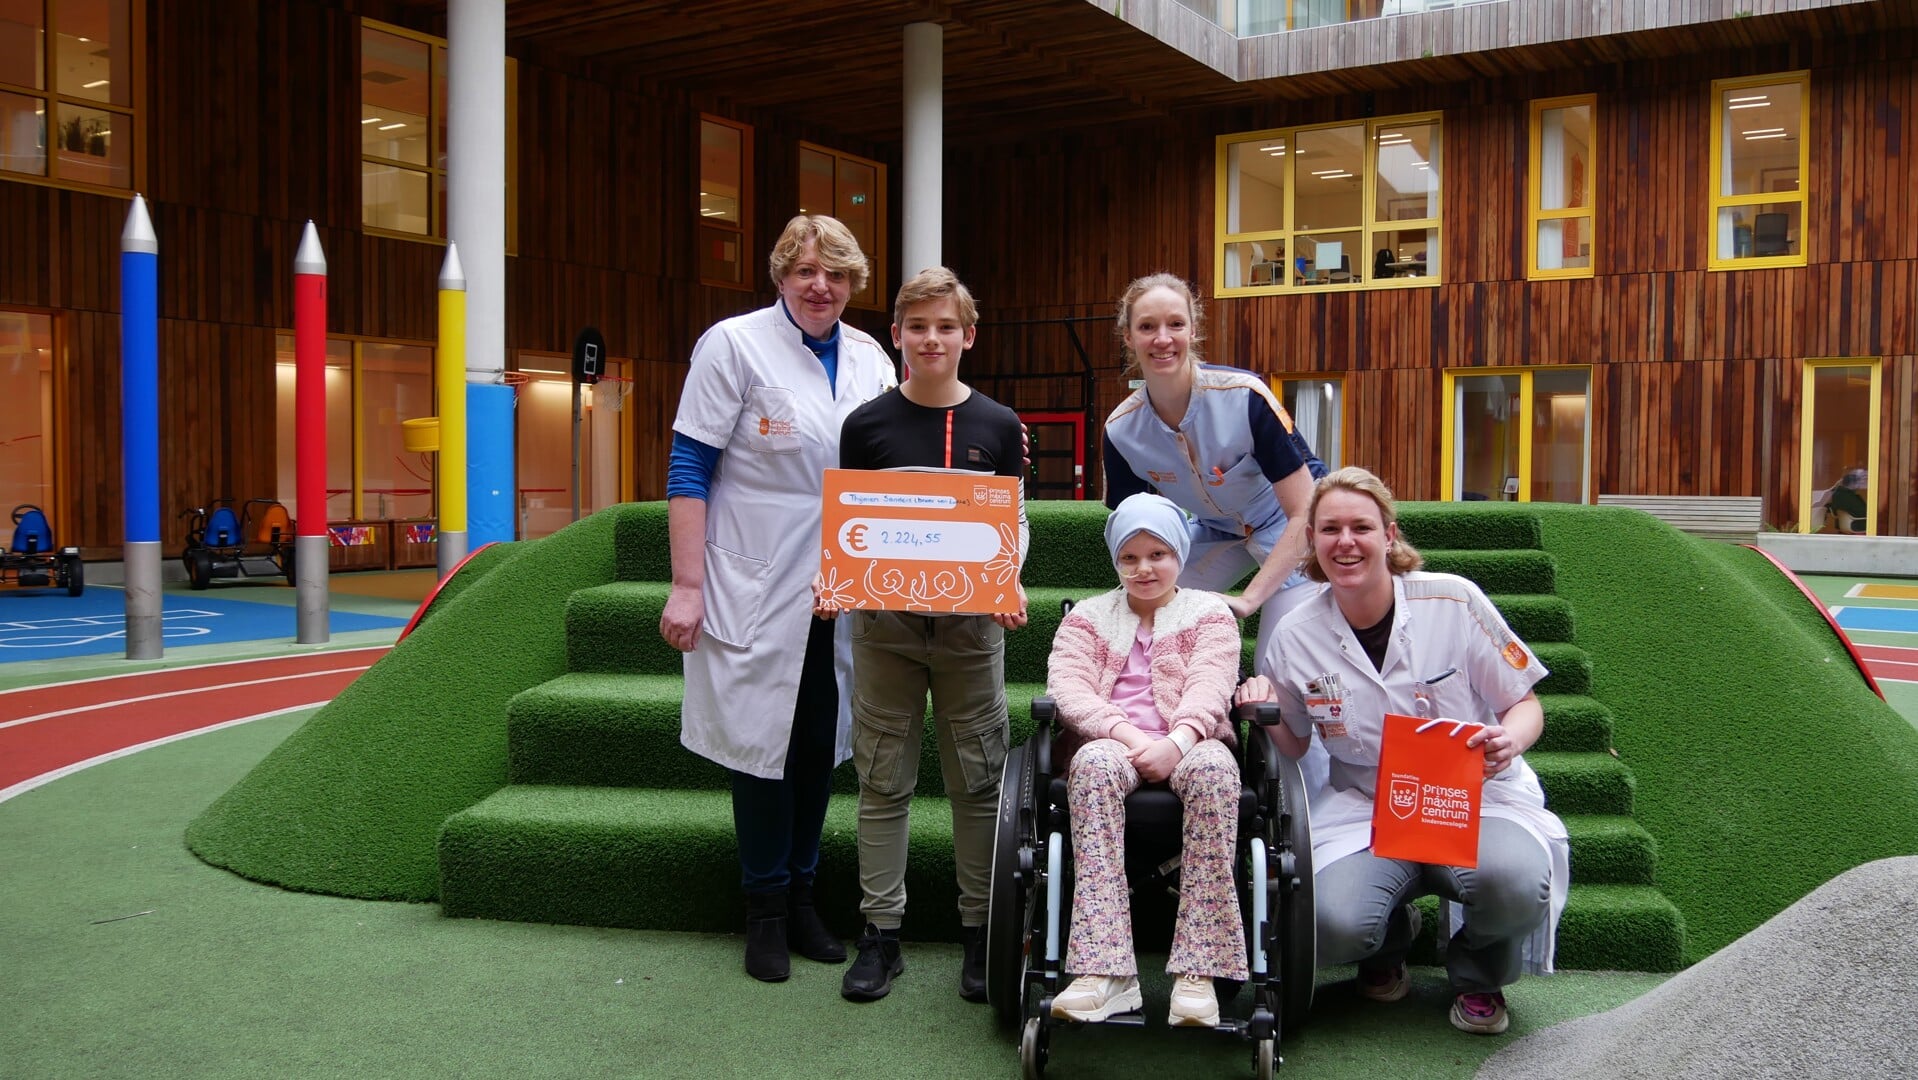 Foto: v.l.n.r: Dr. M.D van de Wetering kinderoncoloog, Thijmen, Tirza Schuerhoff (Medisch pedagogisch zorgverlener), Lotte, en Jonne Donatz Verpleegkundig specialist i.o.